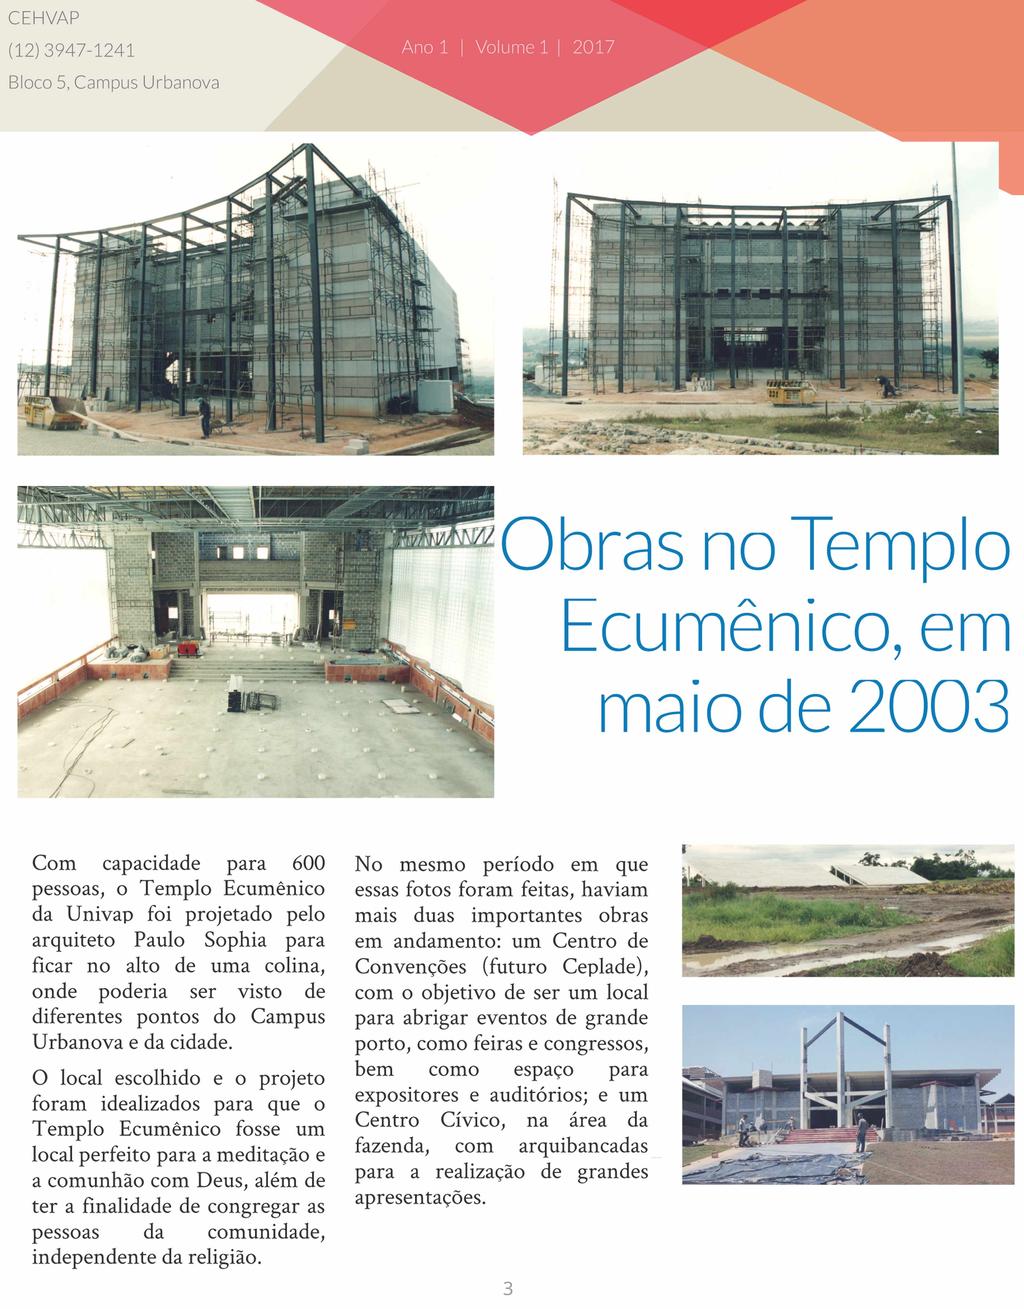 (12)3947-1241 ' u J Obras no Templo tcumemco, em maio de 2003 Com capacidade para 600 pessoas, o Templo Ecumênico da Univap foi projetado pelo arquiteto Paulo Sophia para ficar no alto de uma colina,